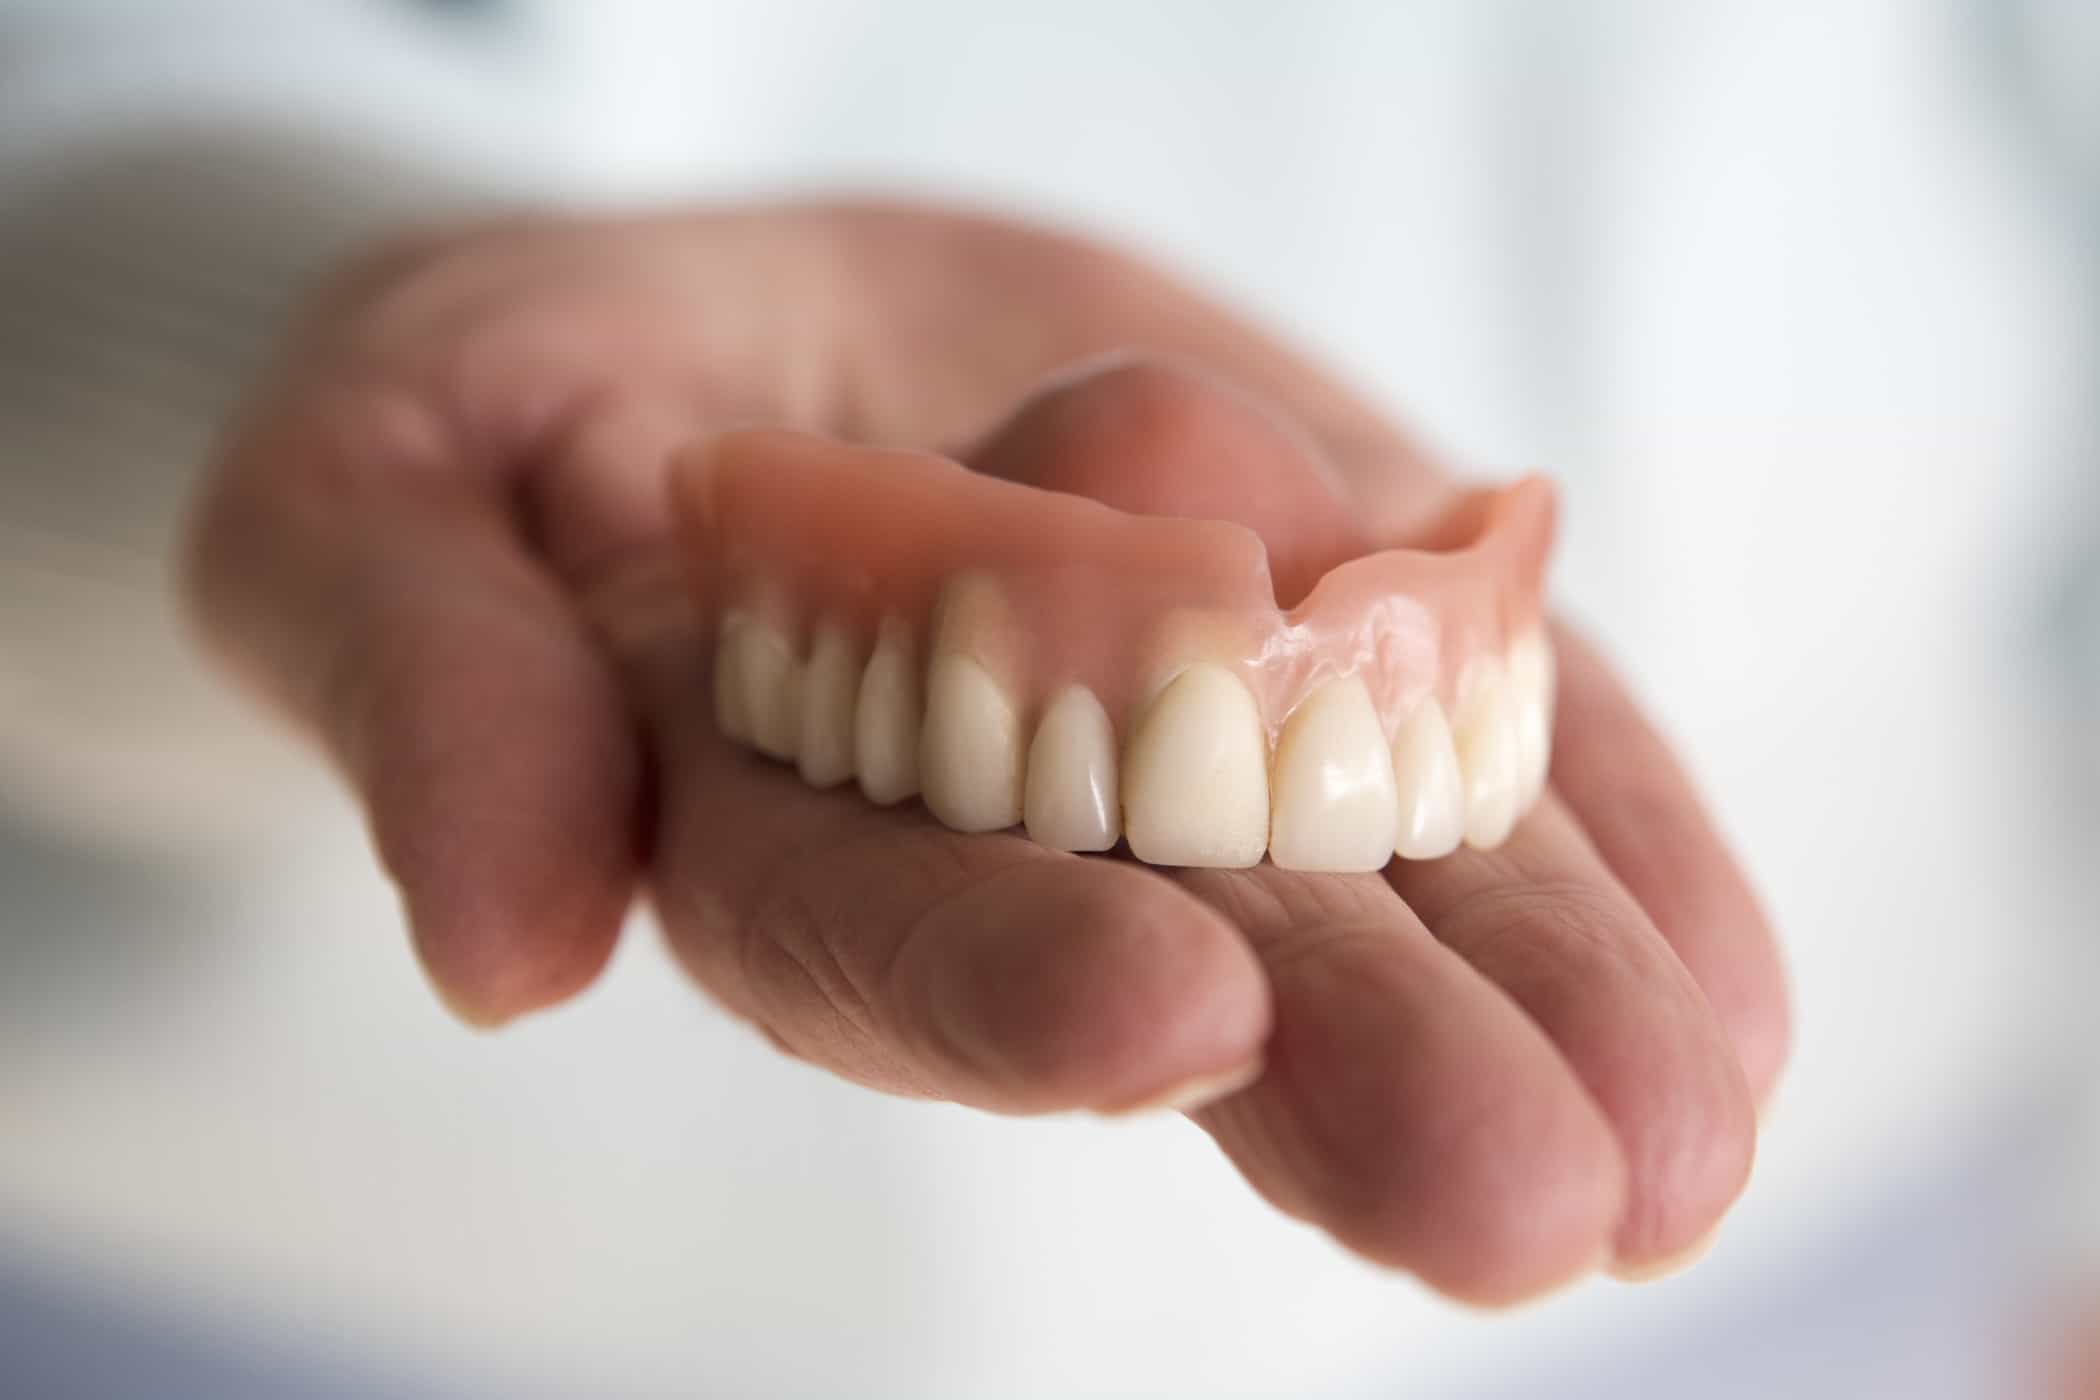 عملية تركيب طقم الأسنان من البداية إلى النهاية التي تحتاج إلى معرفتها